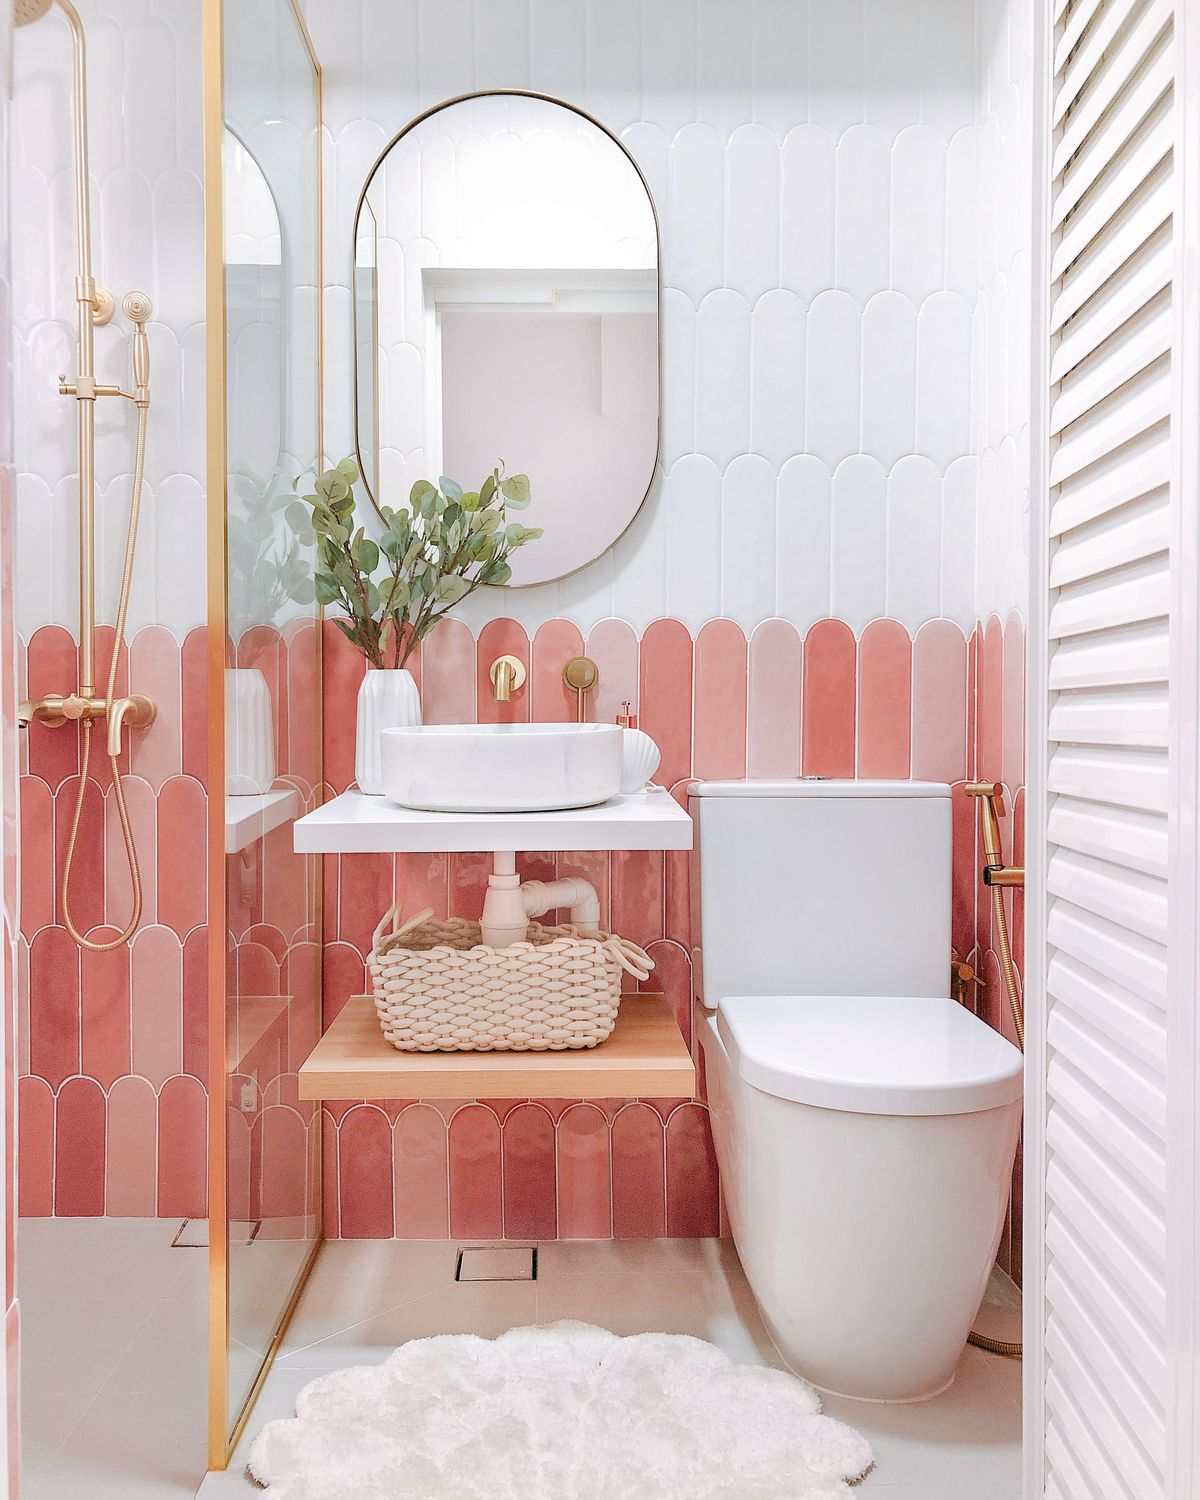 Thiết kế nhà vệ sinh tông pastel